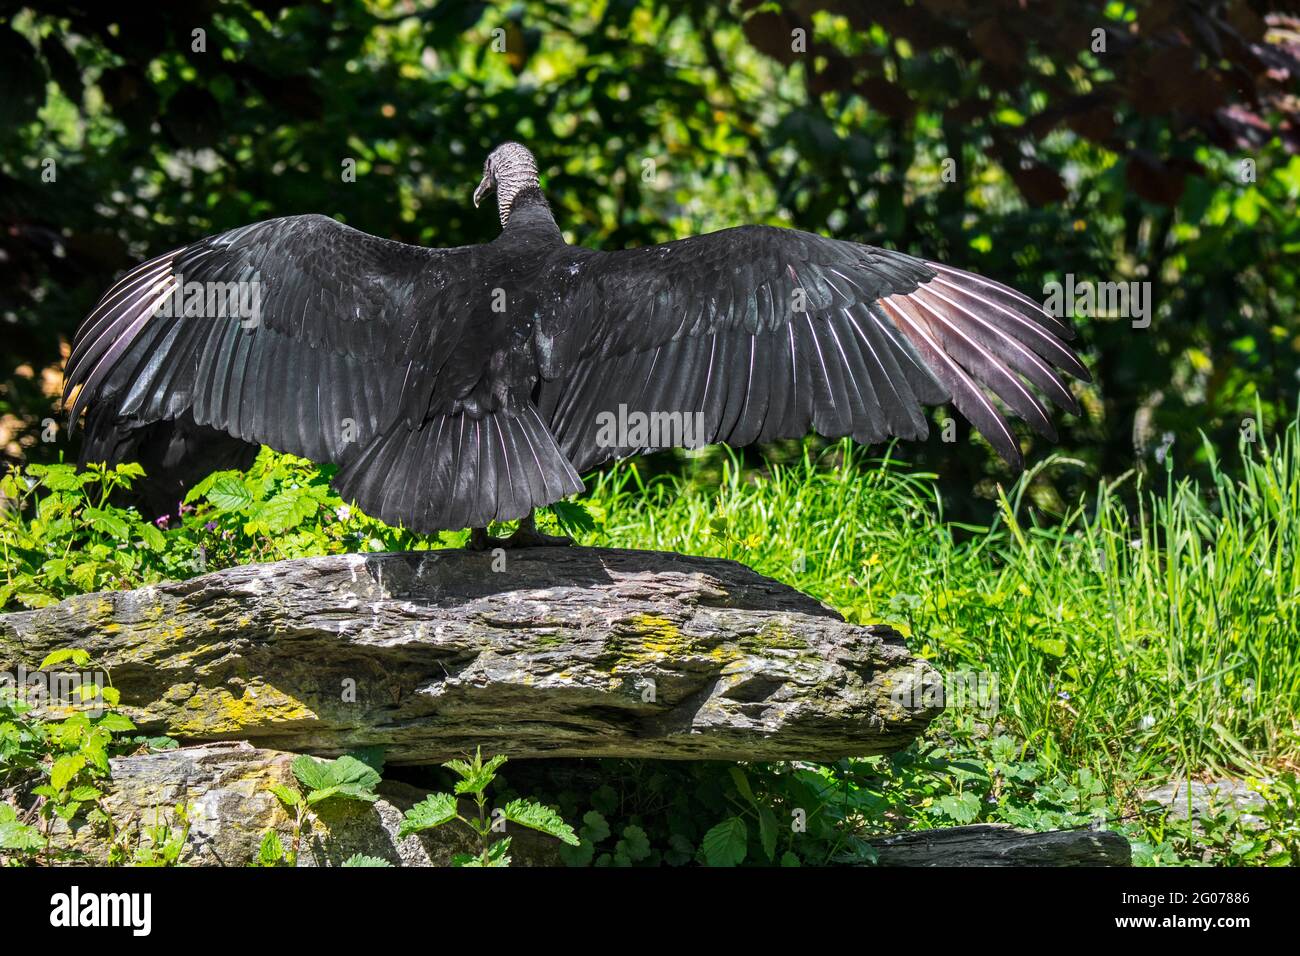 El buitre negro americano (Coragyps atratus) extiende alas que muestran la postura horáltica usada para secar, calentar el cuerpo y hornear bacterias Foto de stock